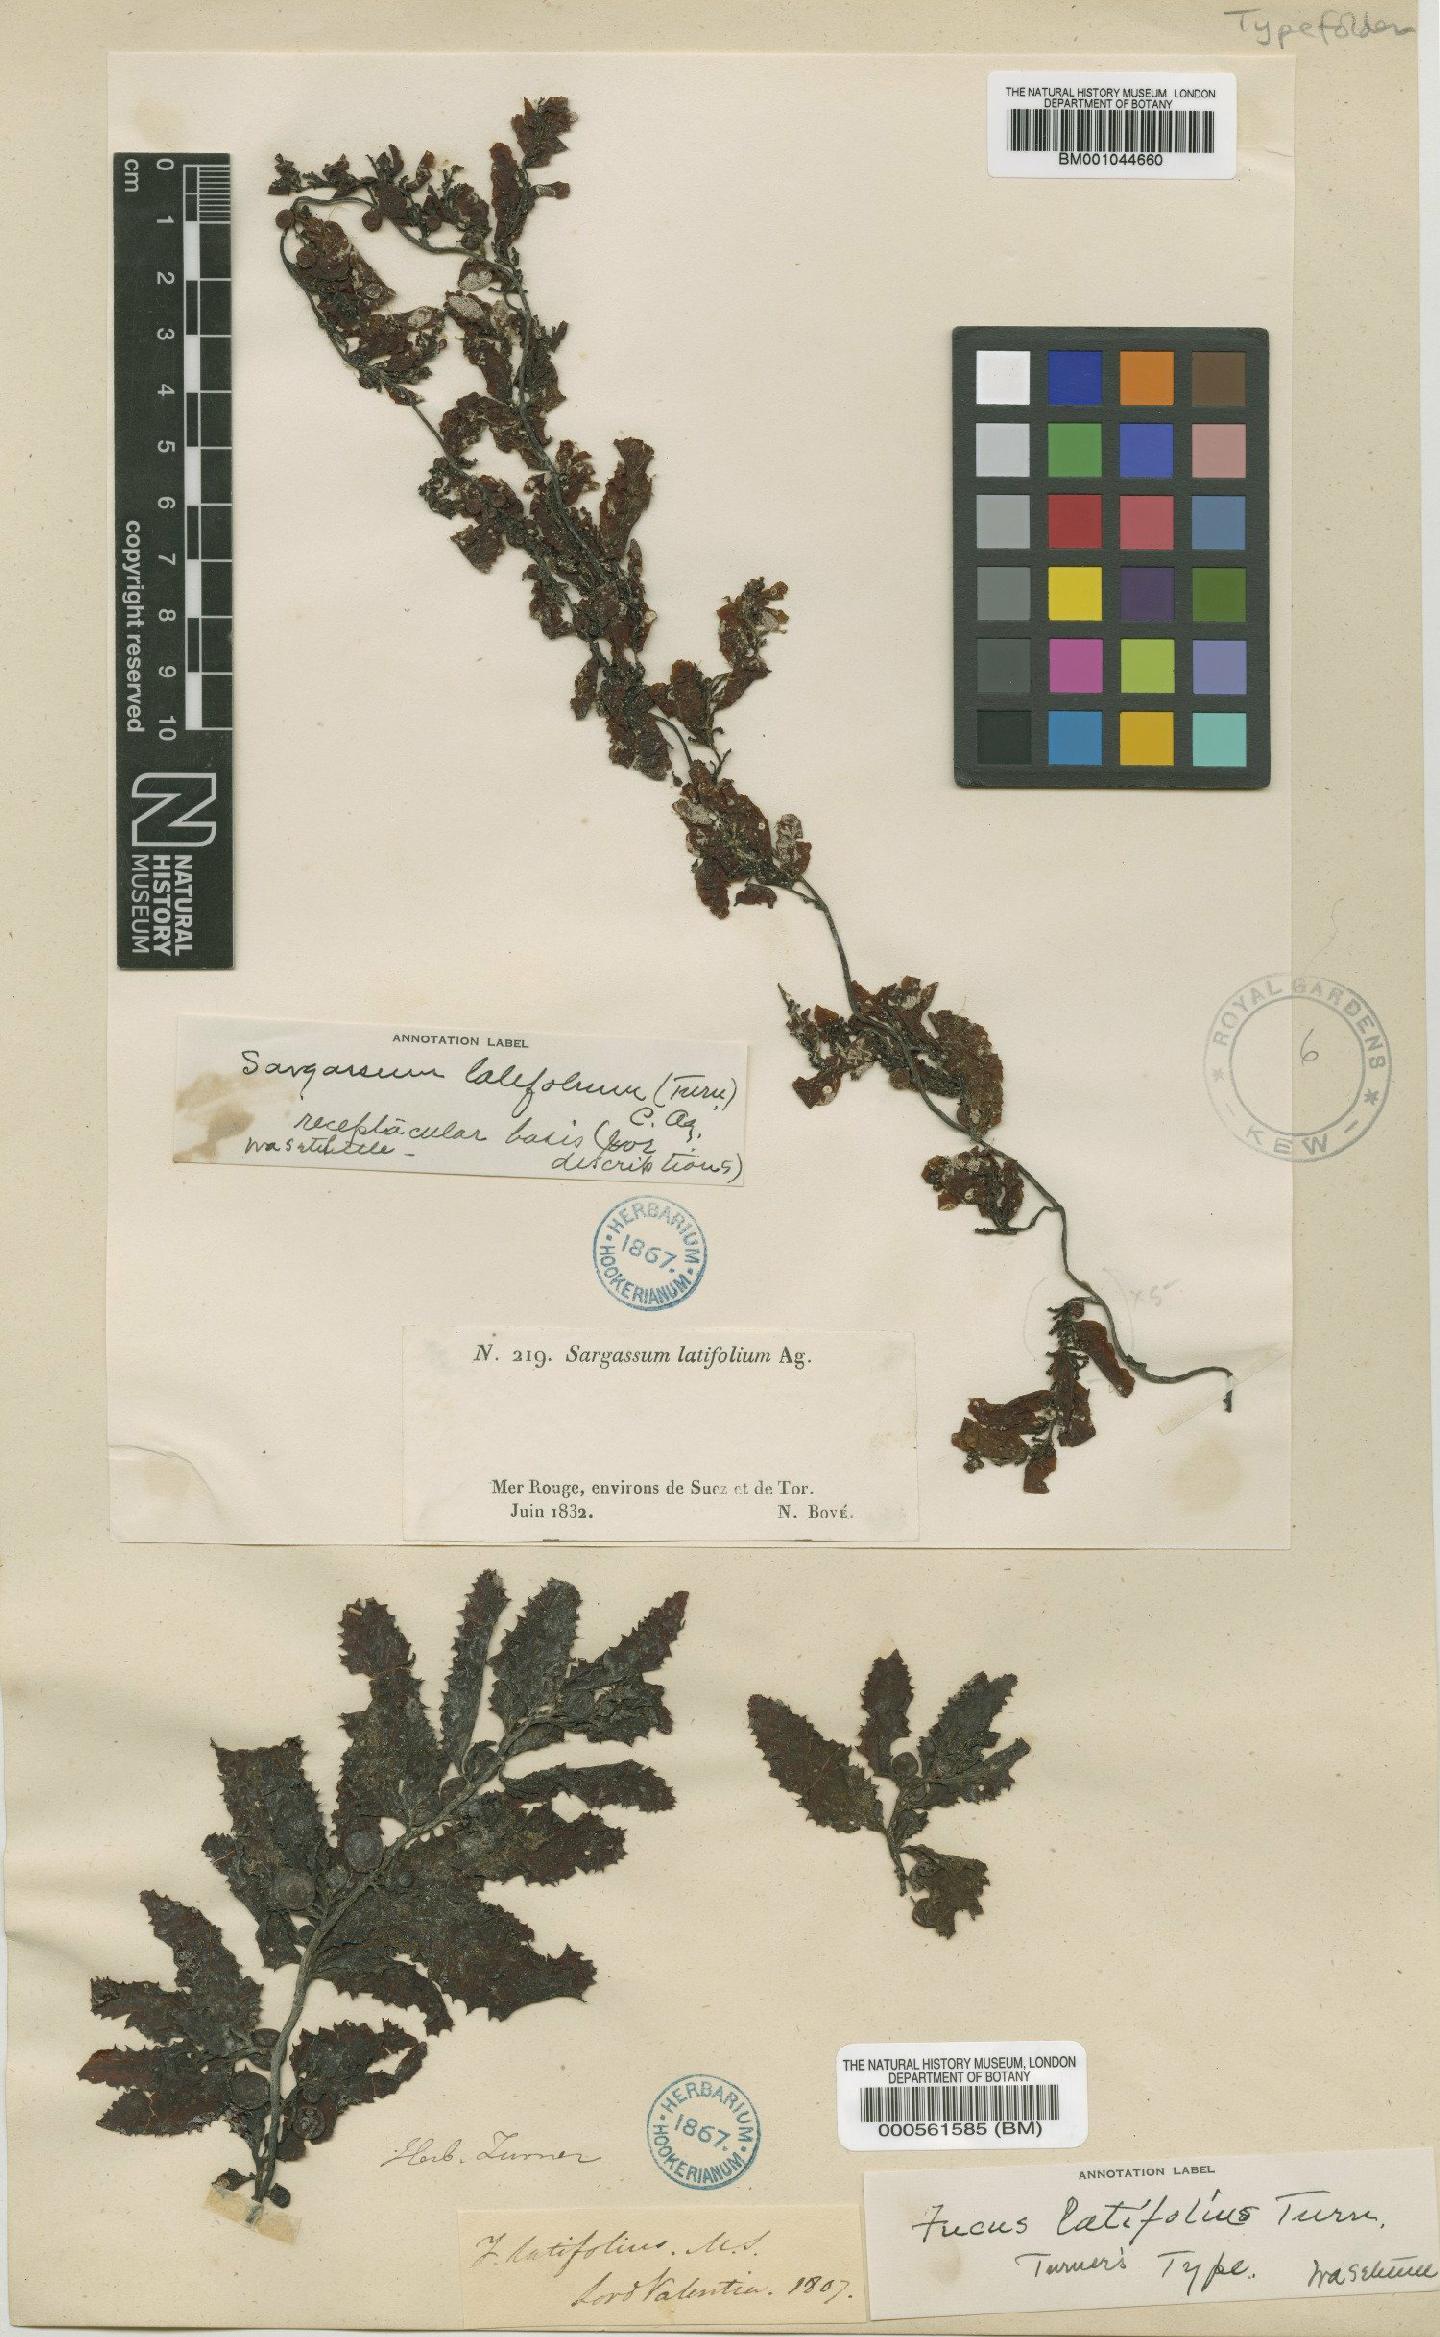 To NHMUK collection (Sargassum latifolium (Turner) Agardh; NHMUK:ecatalogue:634463)